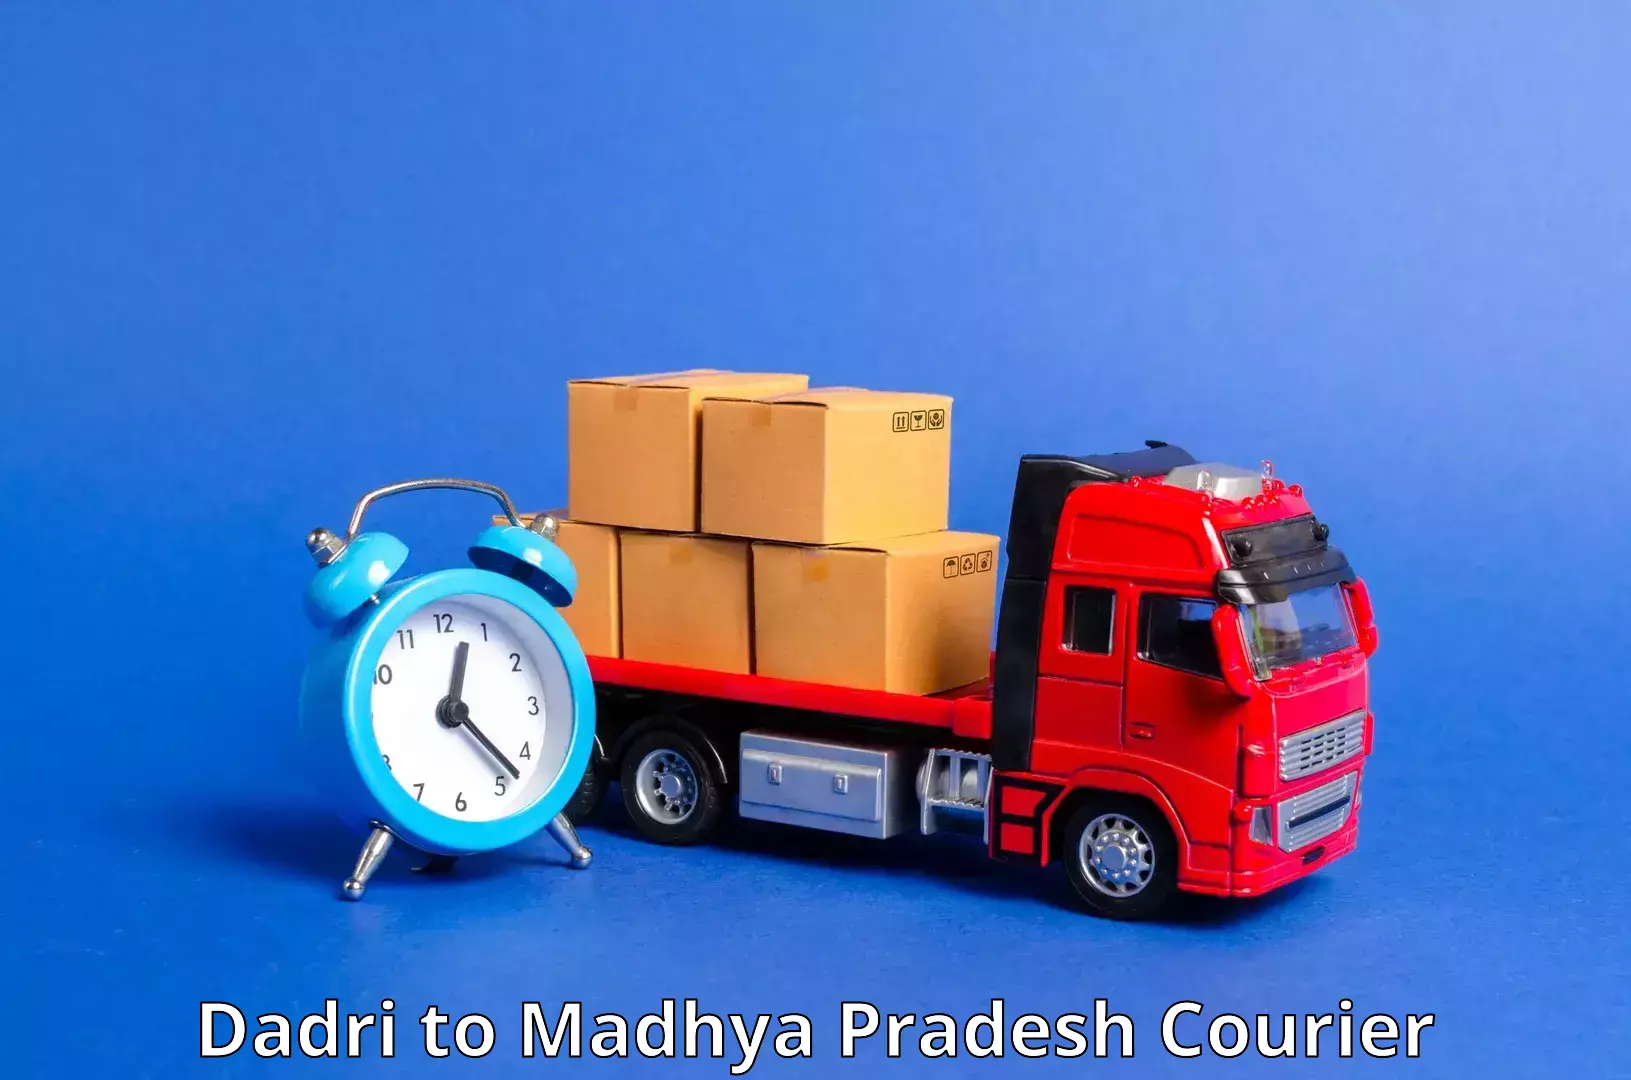 Advanced delivery network Dadri to Shujalpur